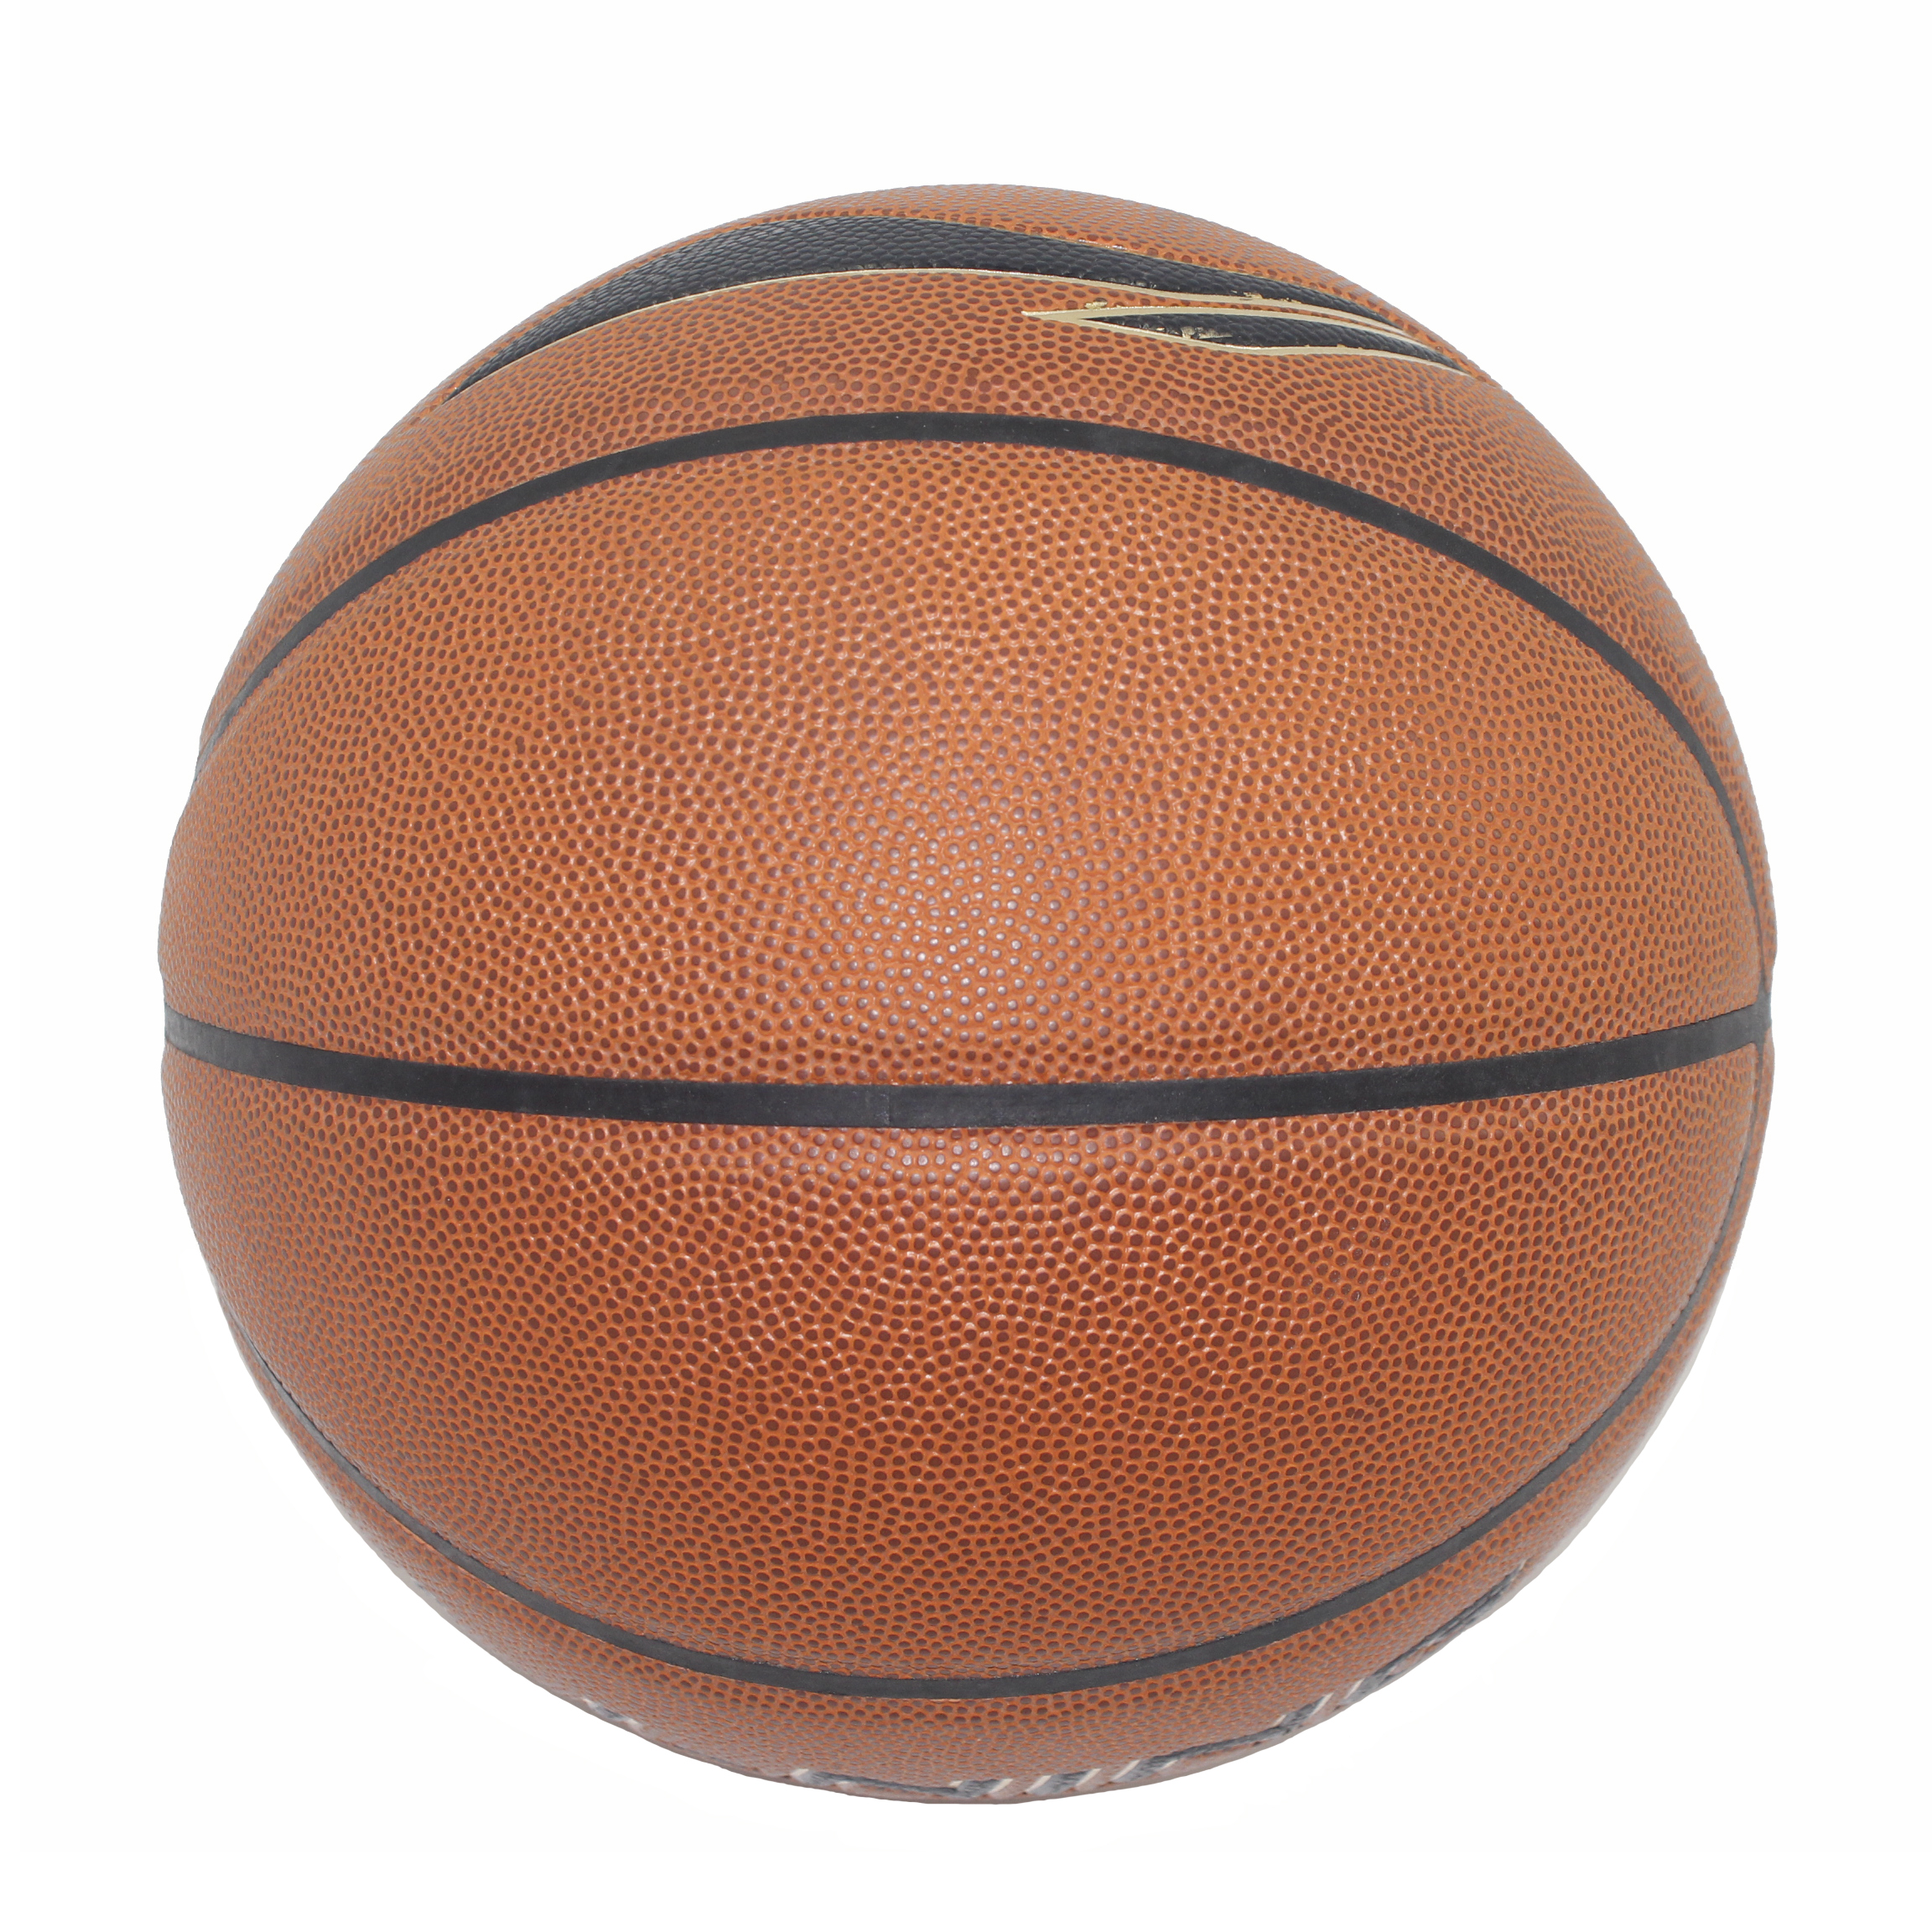 Baloncesto modificado para requisitos particulares al aire libre de alta calidad del tamaño 5 6 7 de la piel de la PU del cuero de goma